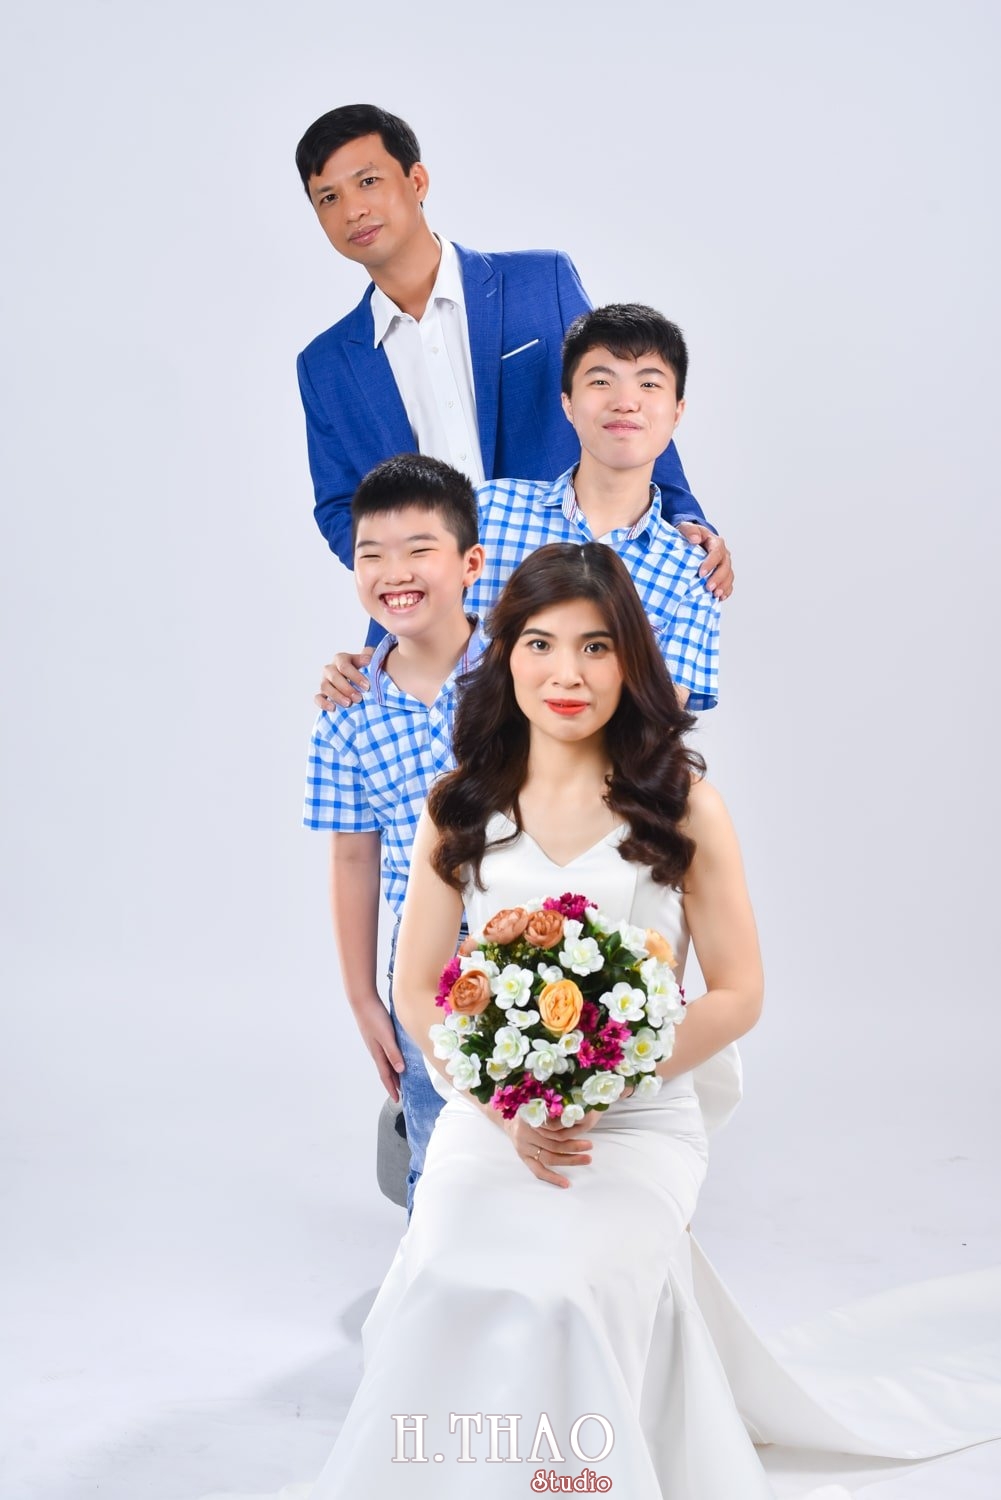 Anh gia dinh 4 nguoi 4 min - 45 cách tạo dáng chụp ảnh gia đình 4 người ấn tượng nhất - HThao Studio